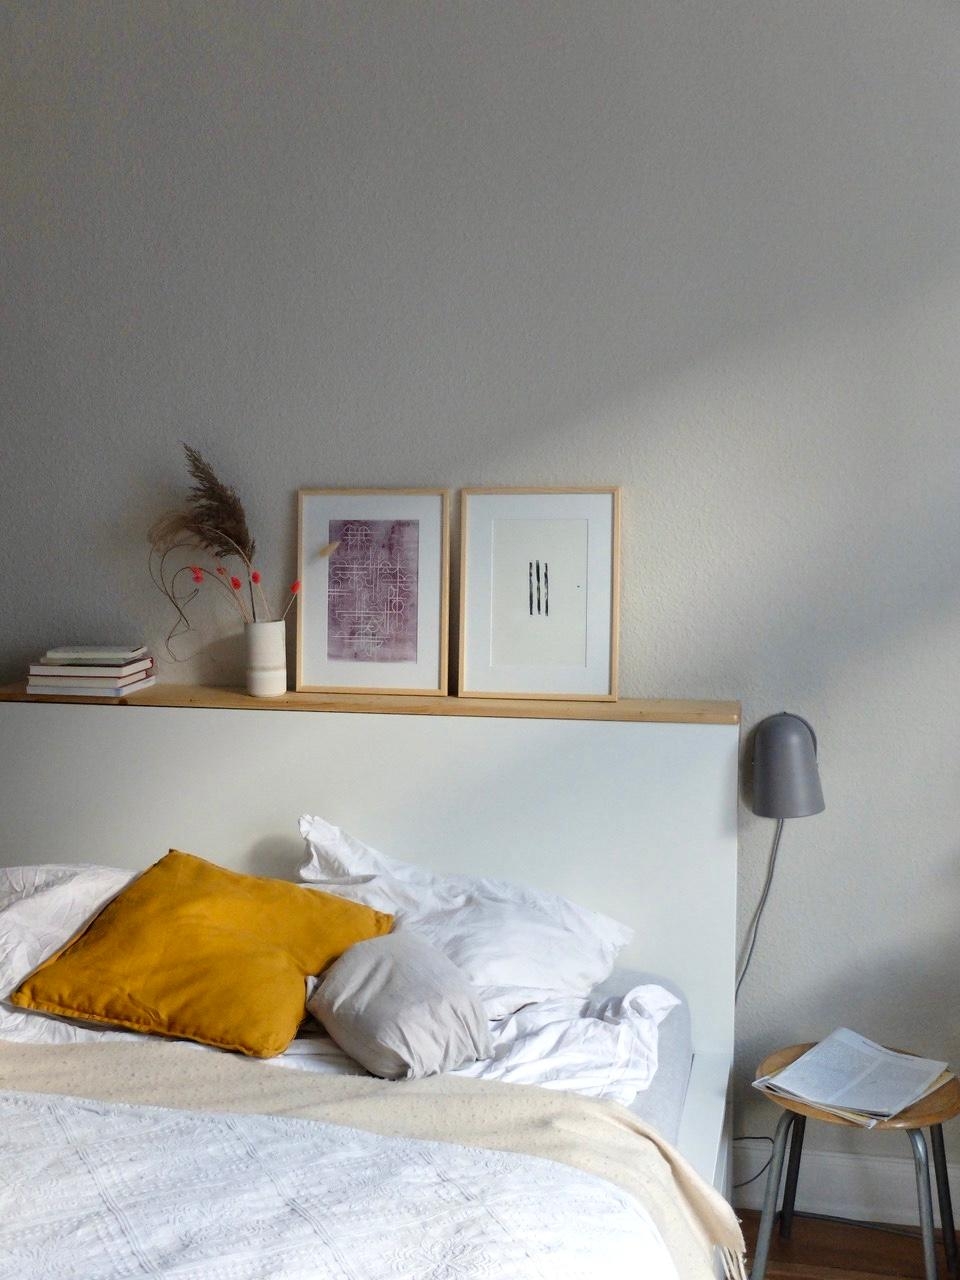 #schlafzimmer #art #linoldruck #ikea #altbau #interior 